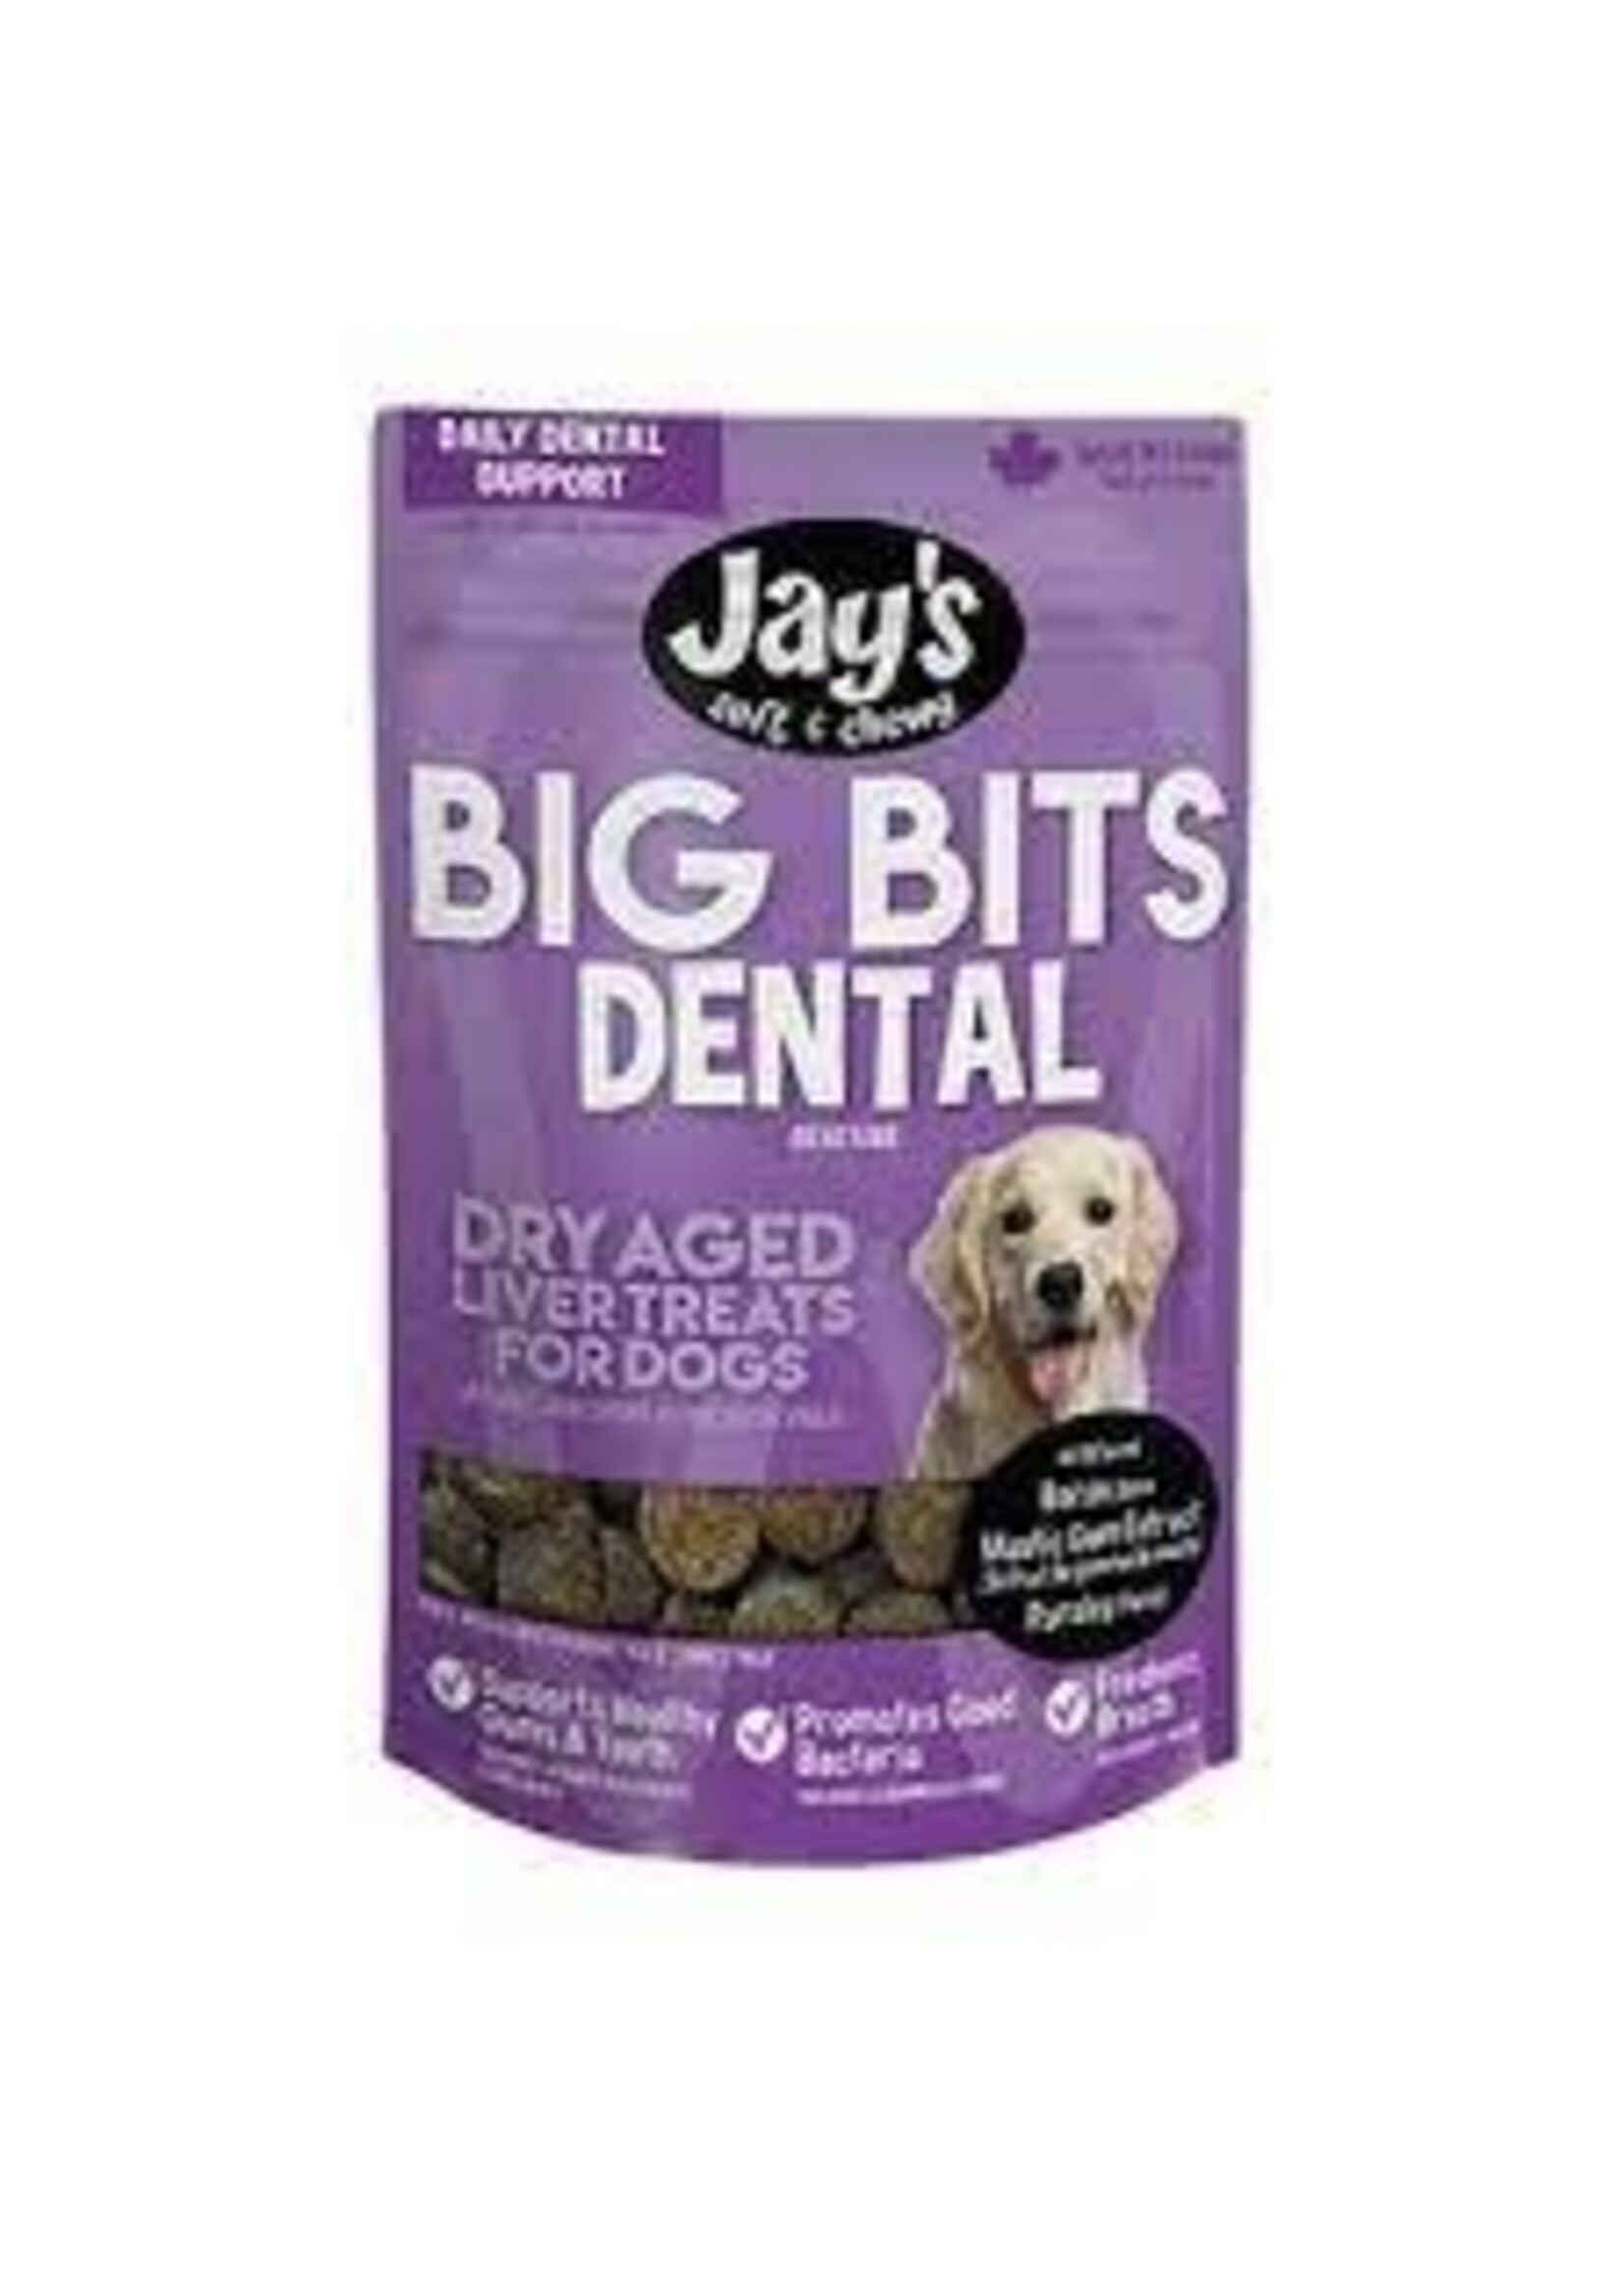 Jay's Jay's Big Bits Dental